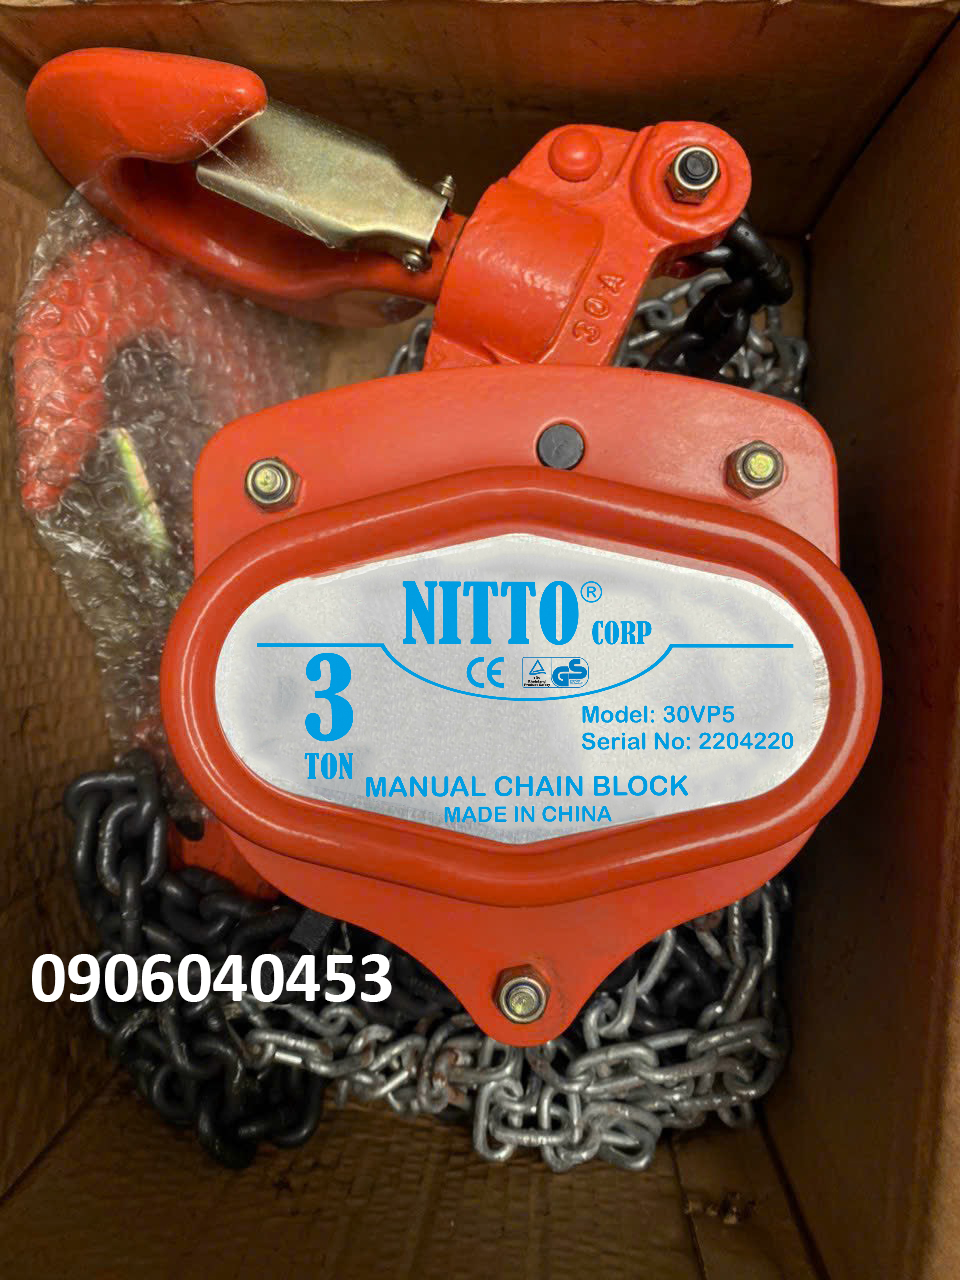 Pa lăng kéo tay Nitto 3 tấn 30VP5 / 30VP5 Nitto Chain Block